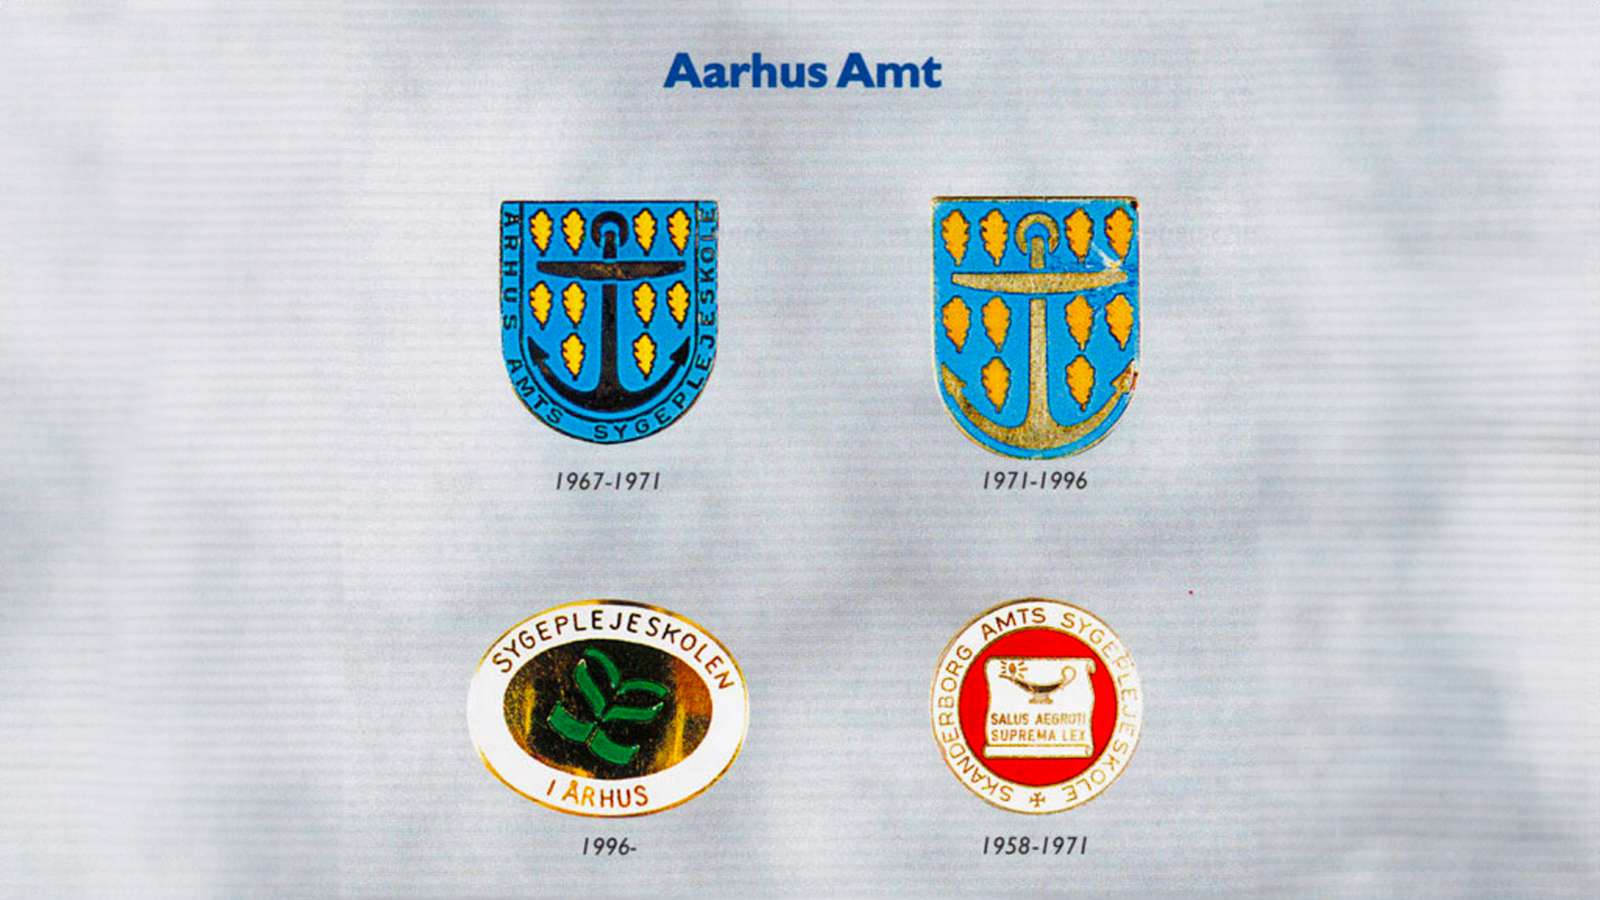 Aarhus Amt